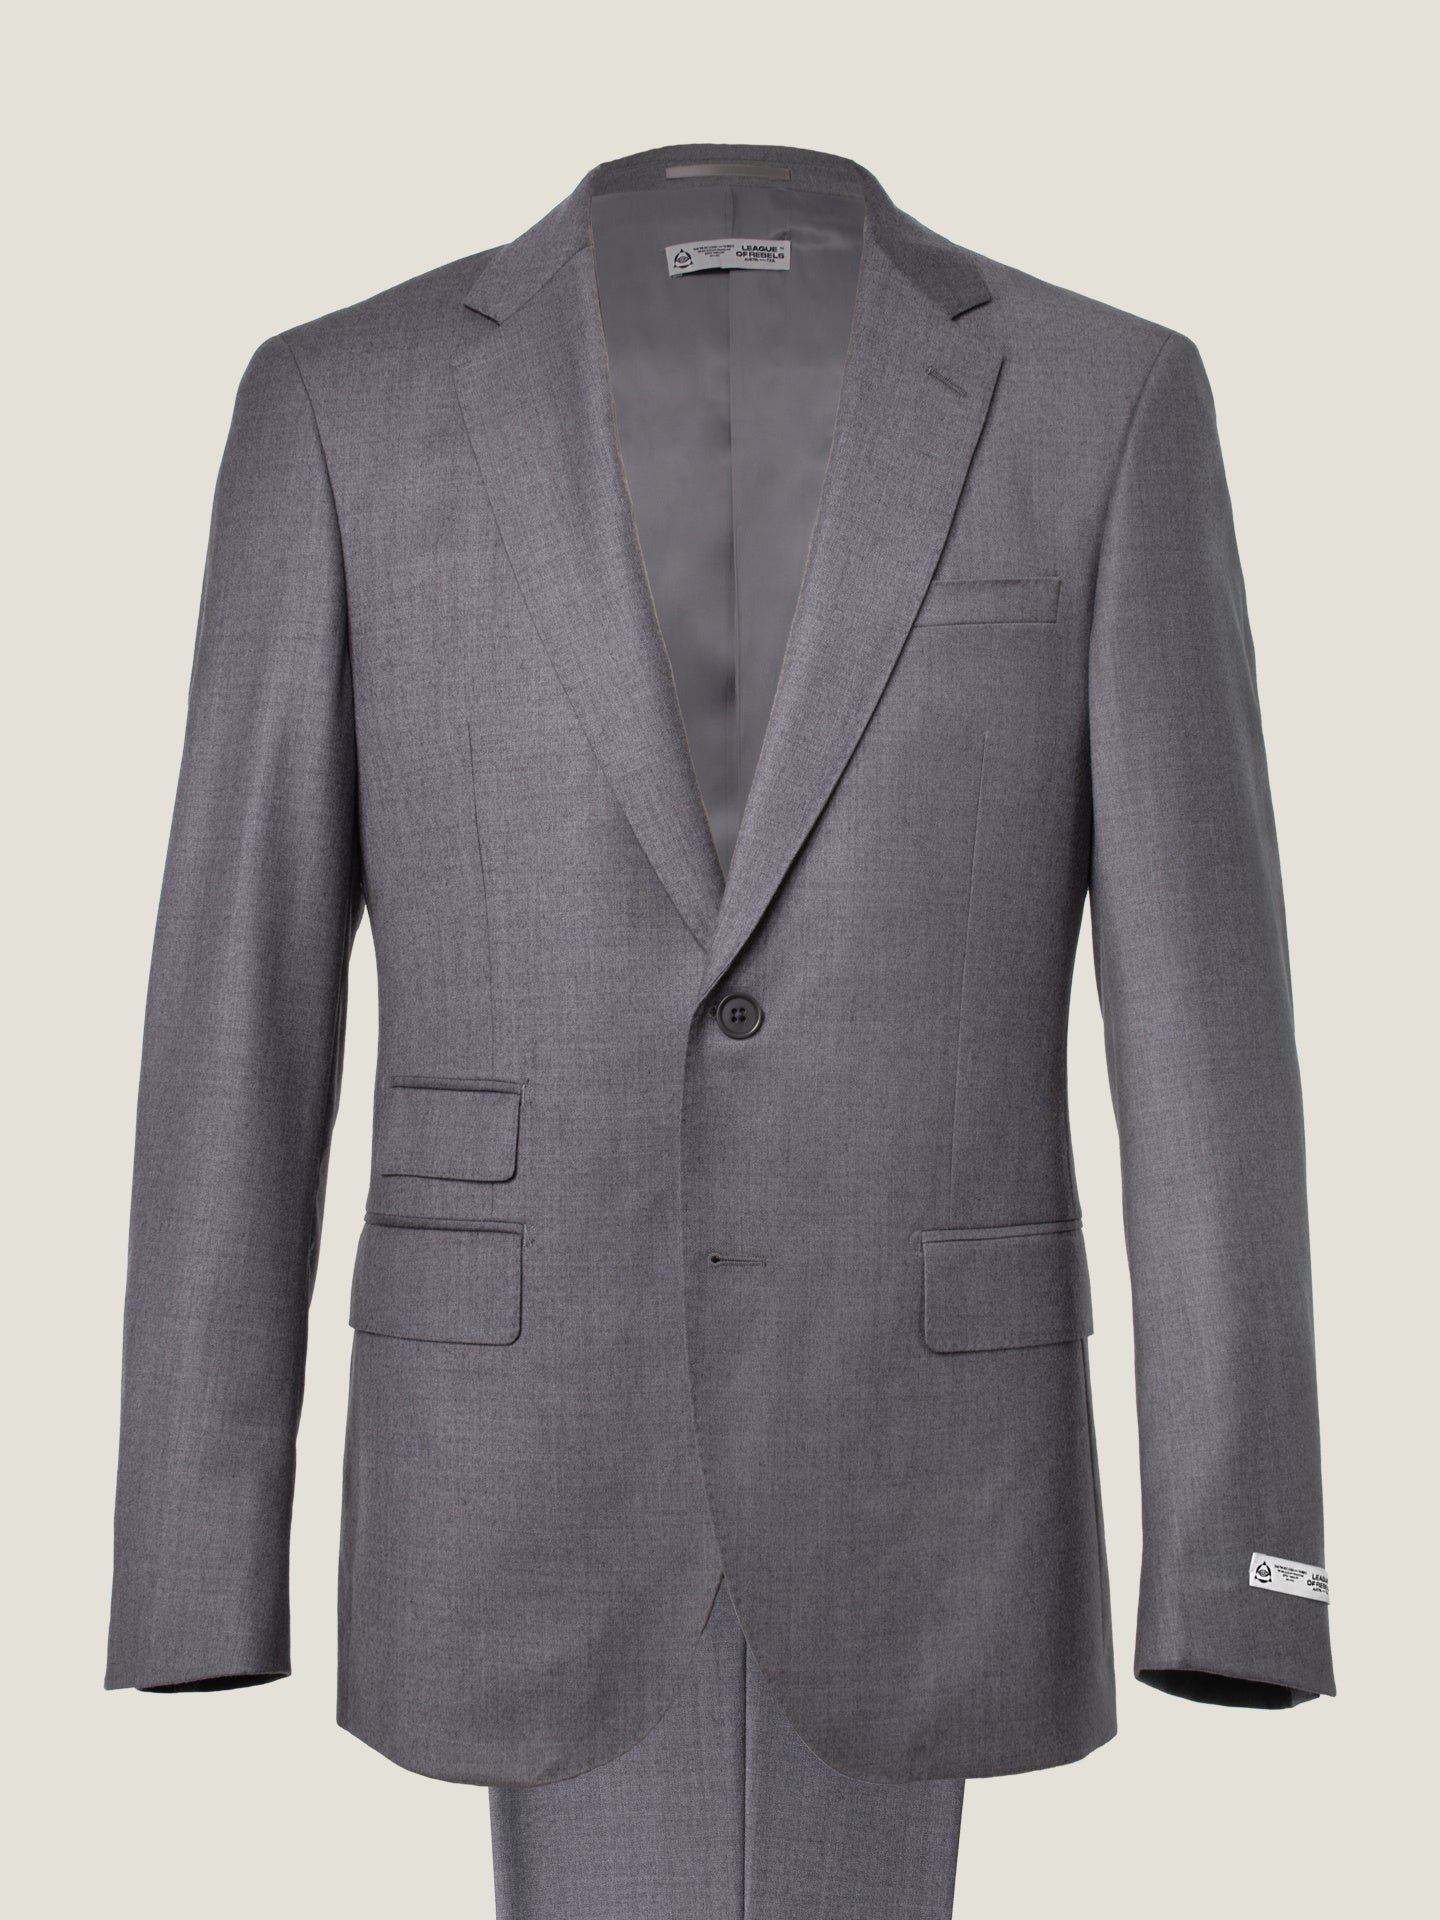 Essential Grey Suit